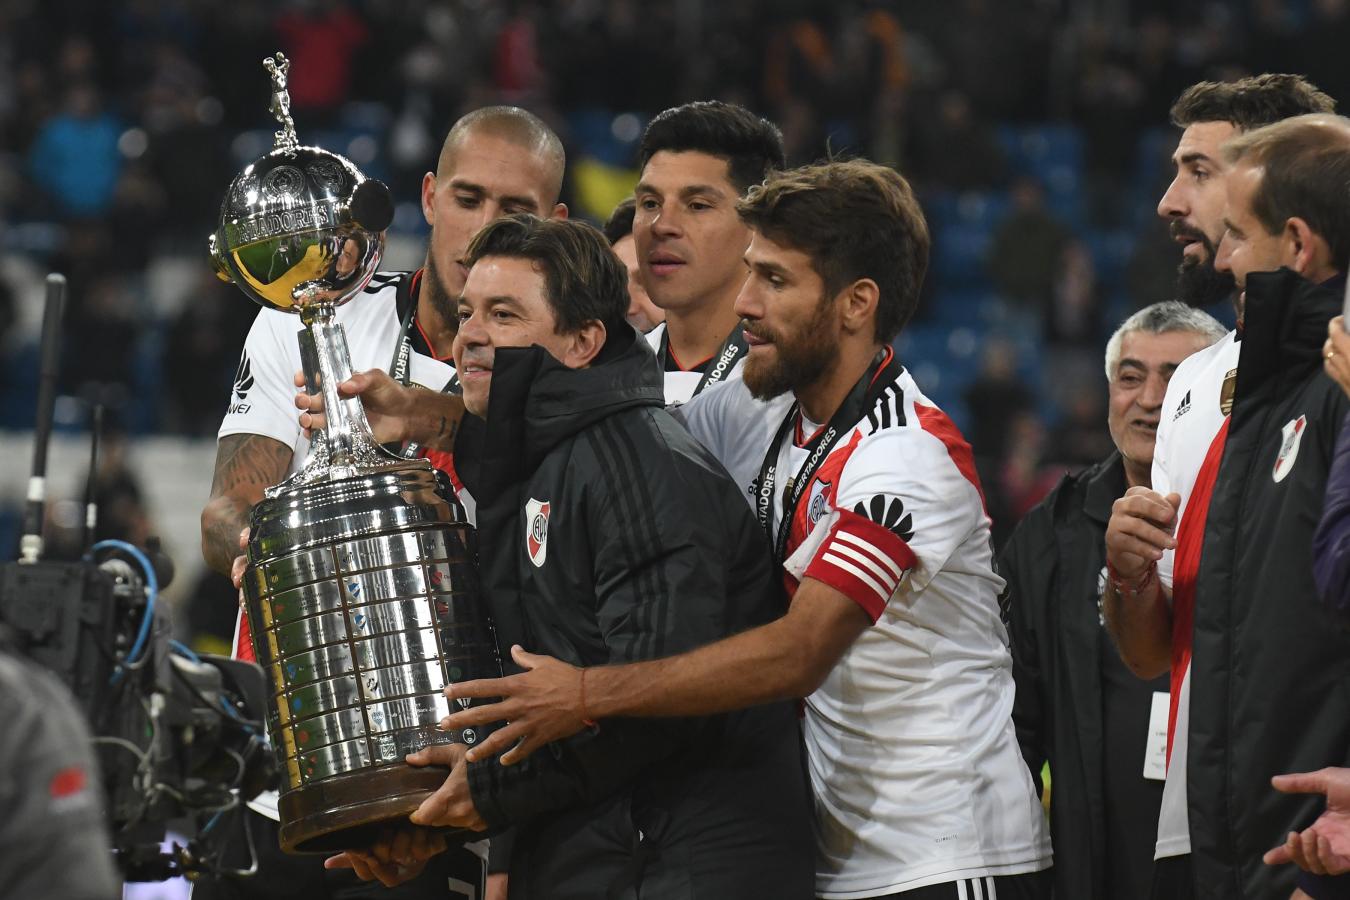 Imagen “La Copa Eterna". Así llaman los hinchas de River a la conquista de la Libertadores 2018, tras el 3-1 sobre Boca en Madrid.